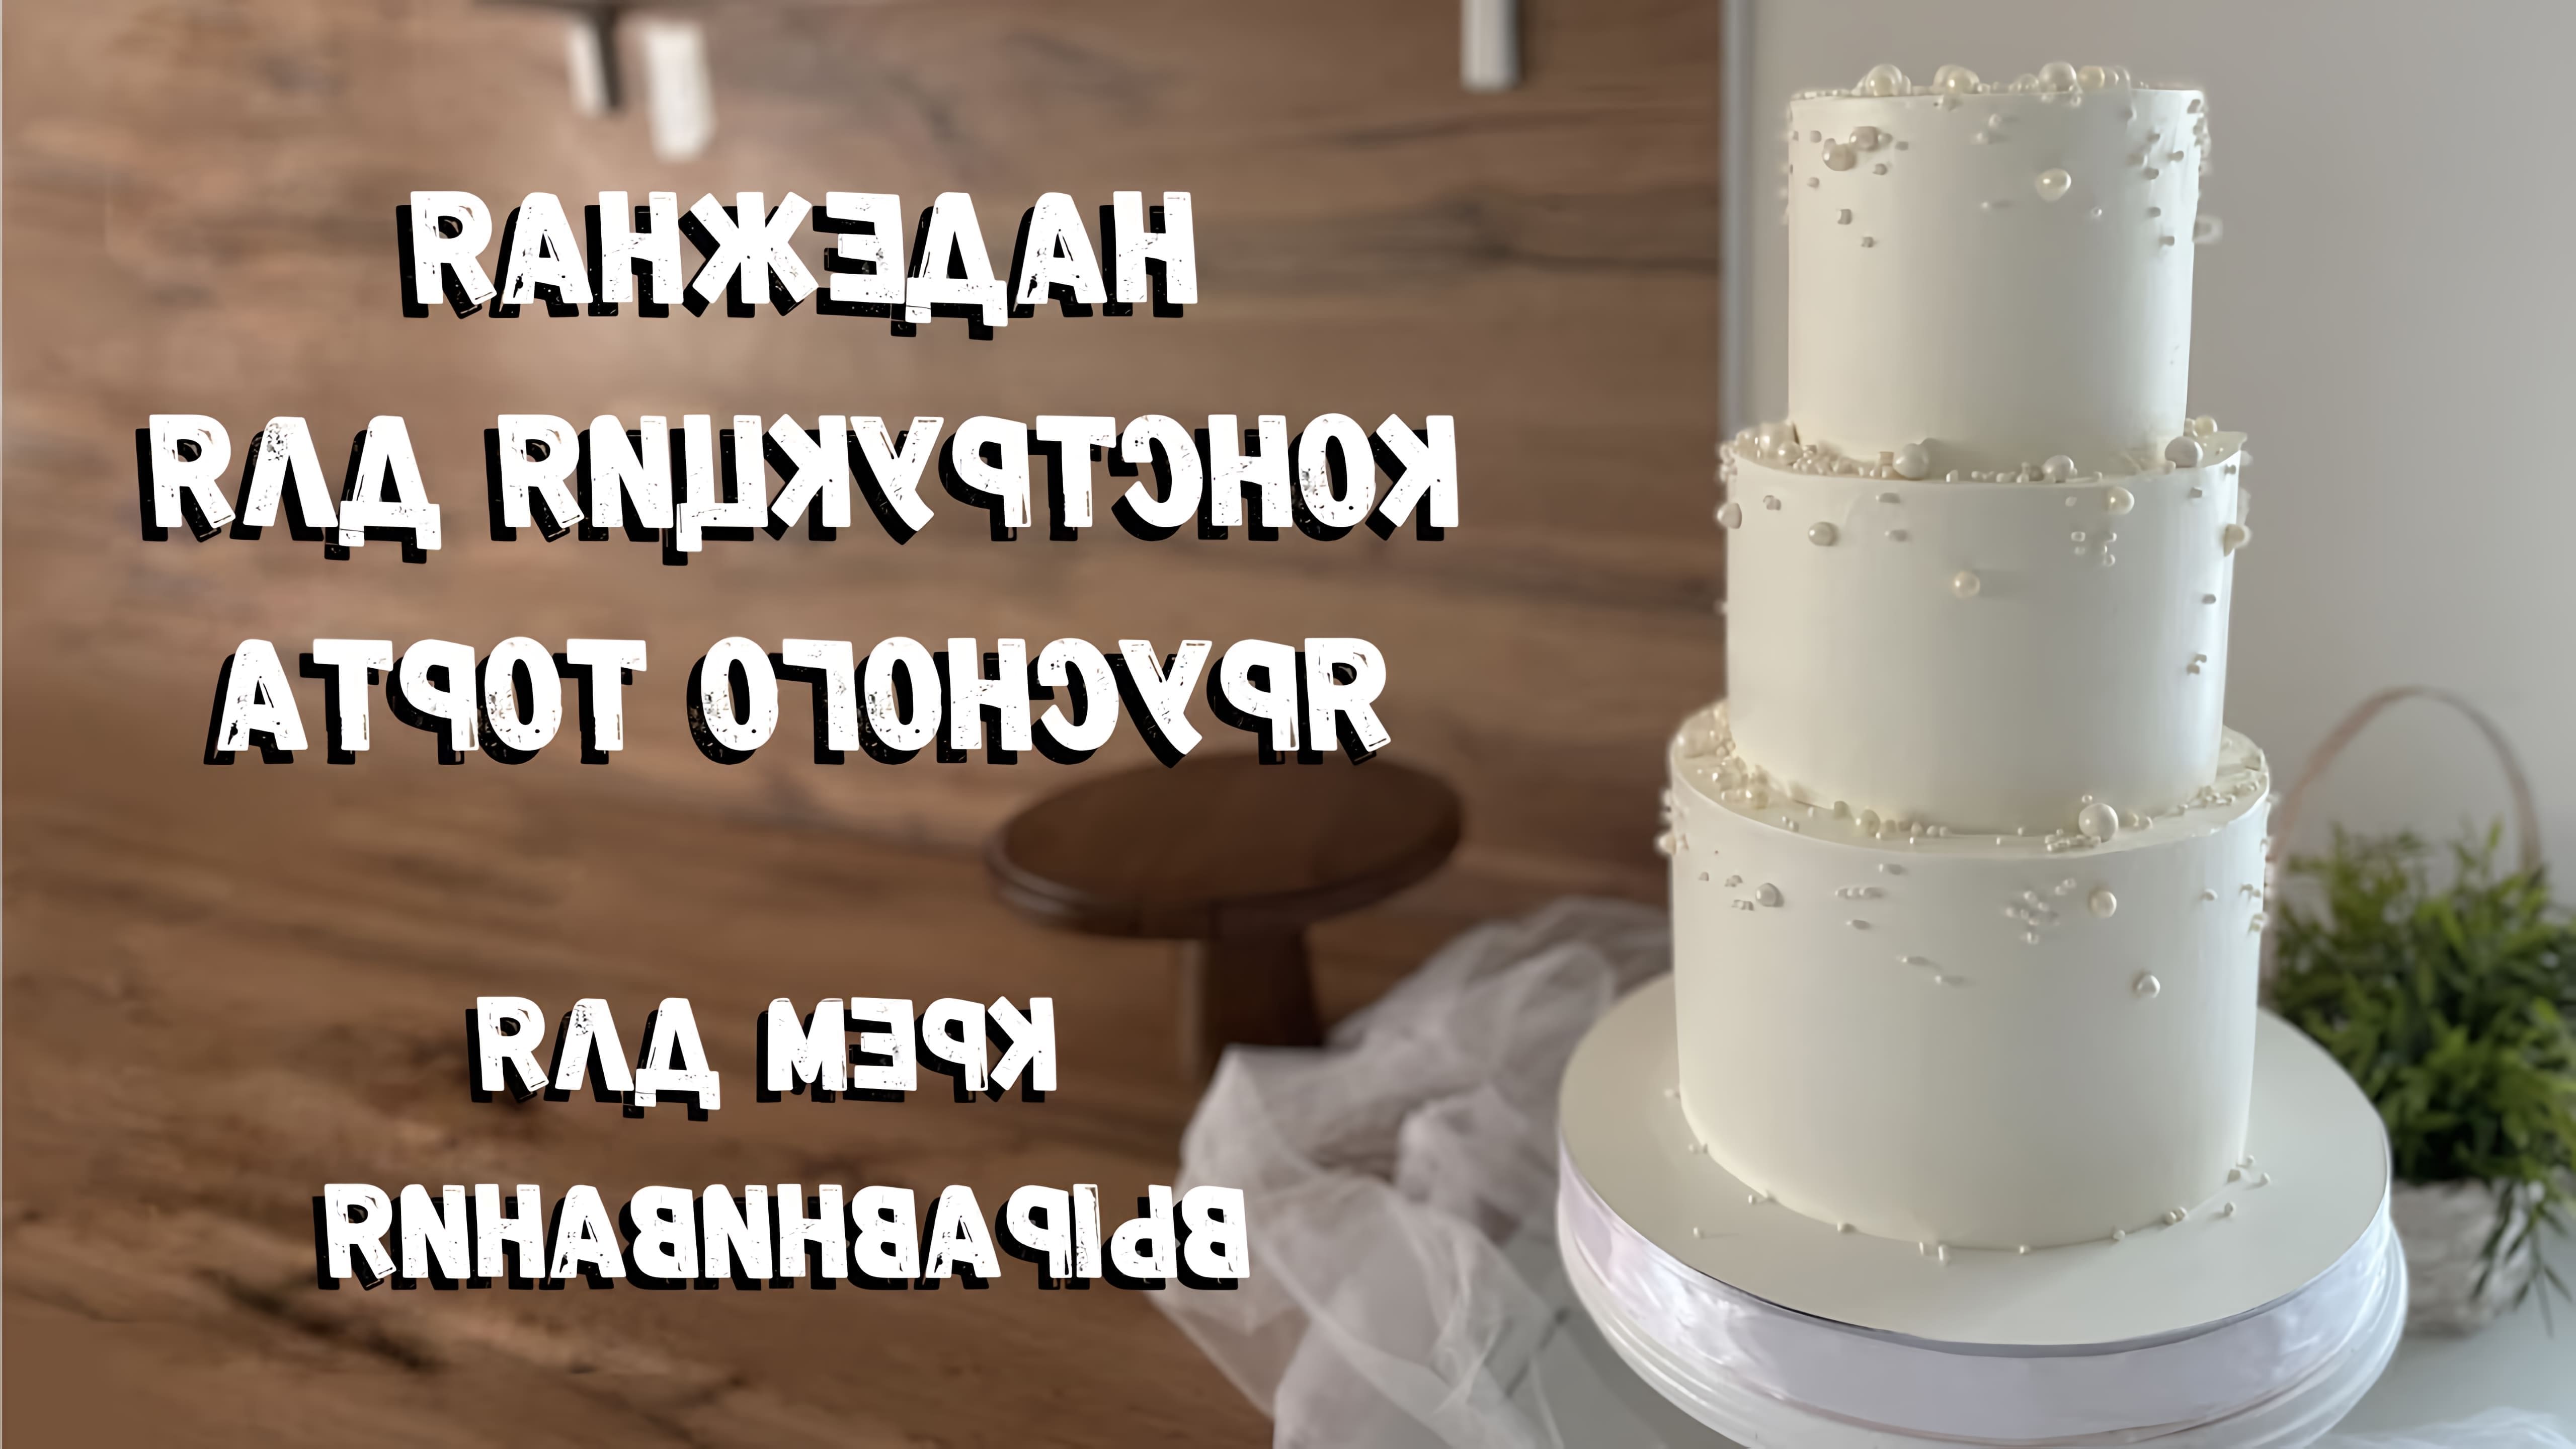 В данном видео демонстрируется процесс сборки трехъярусного торта, начиная с подготовки ингредиентов и заканчивая декорированием